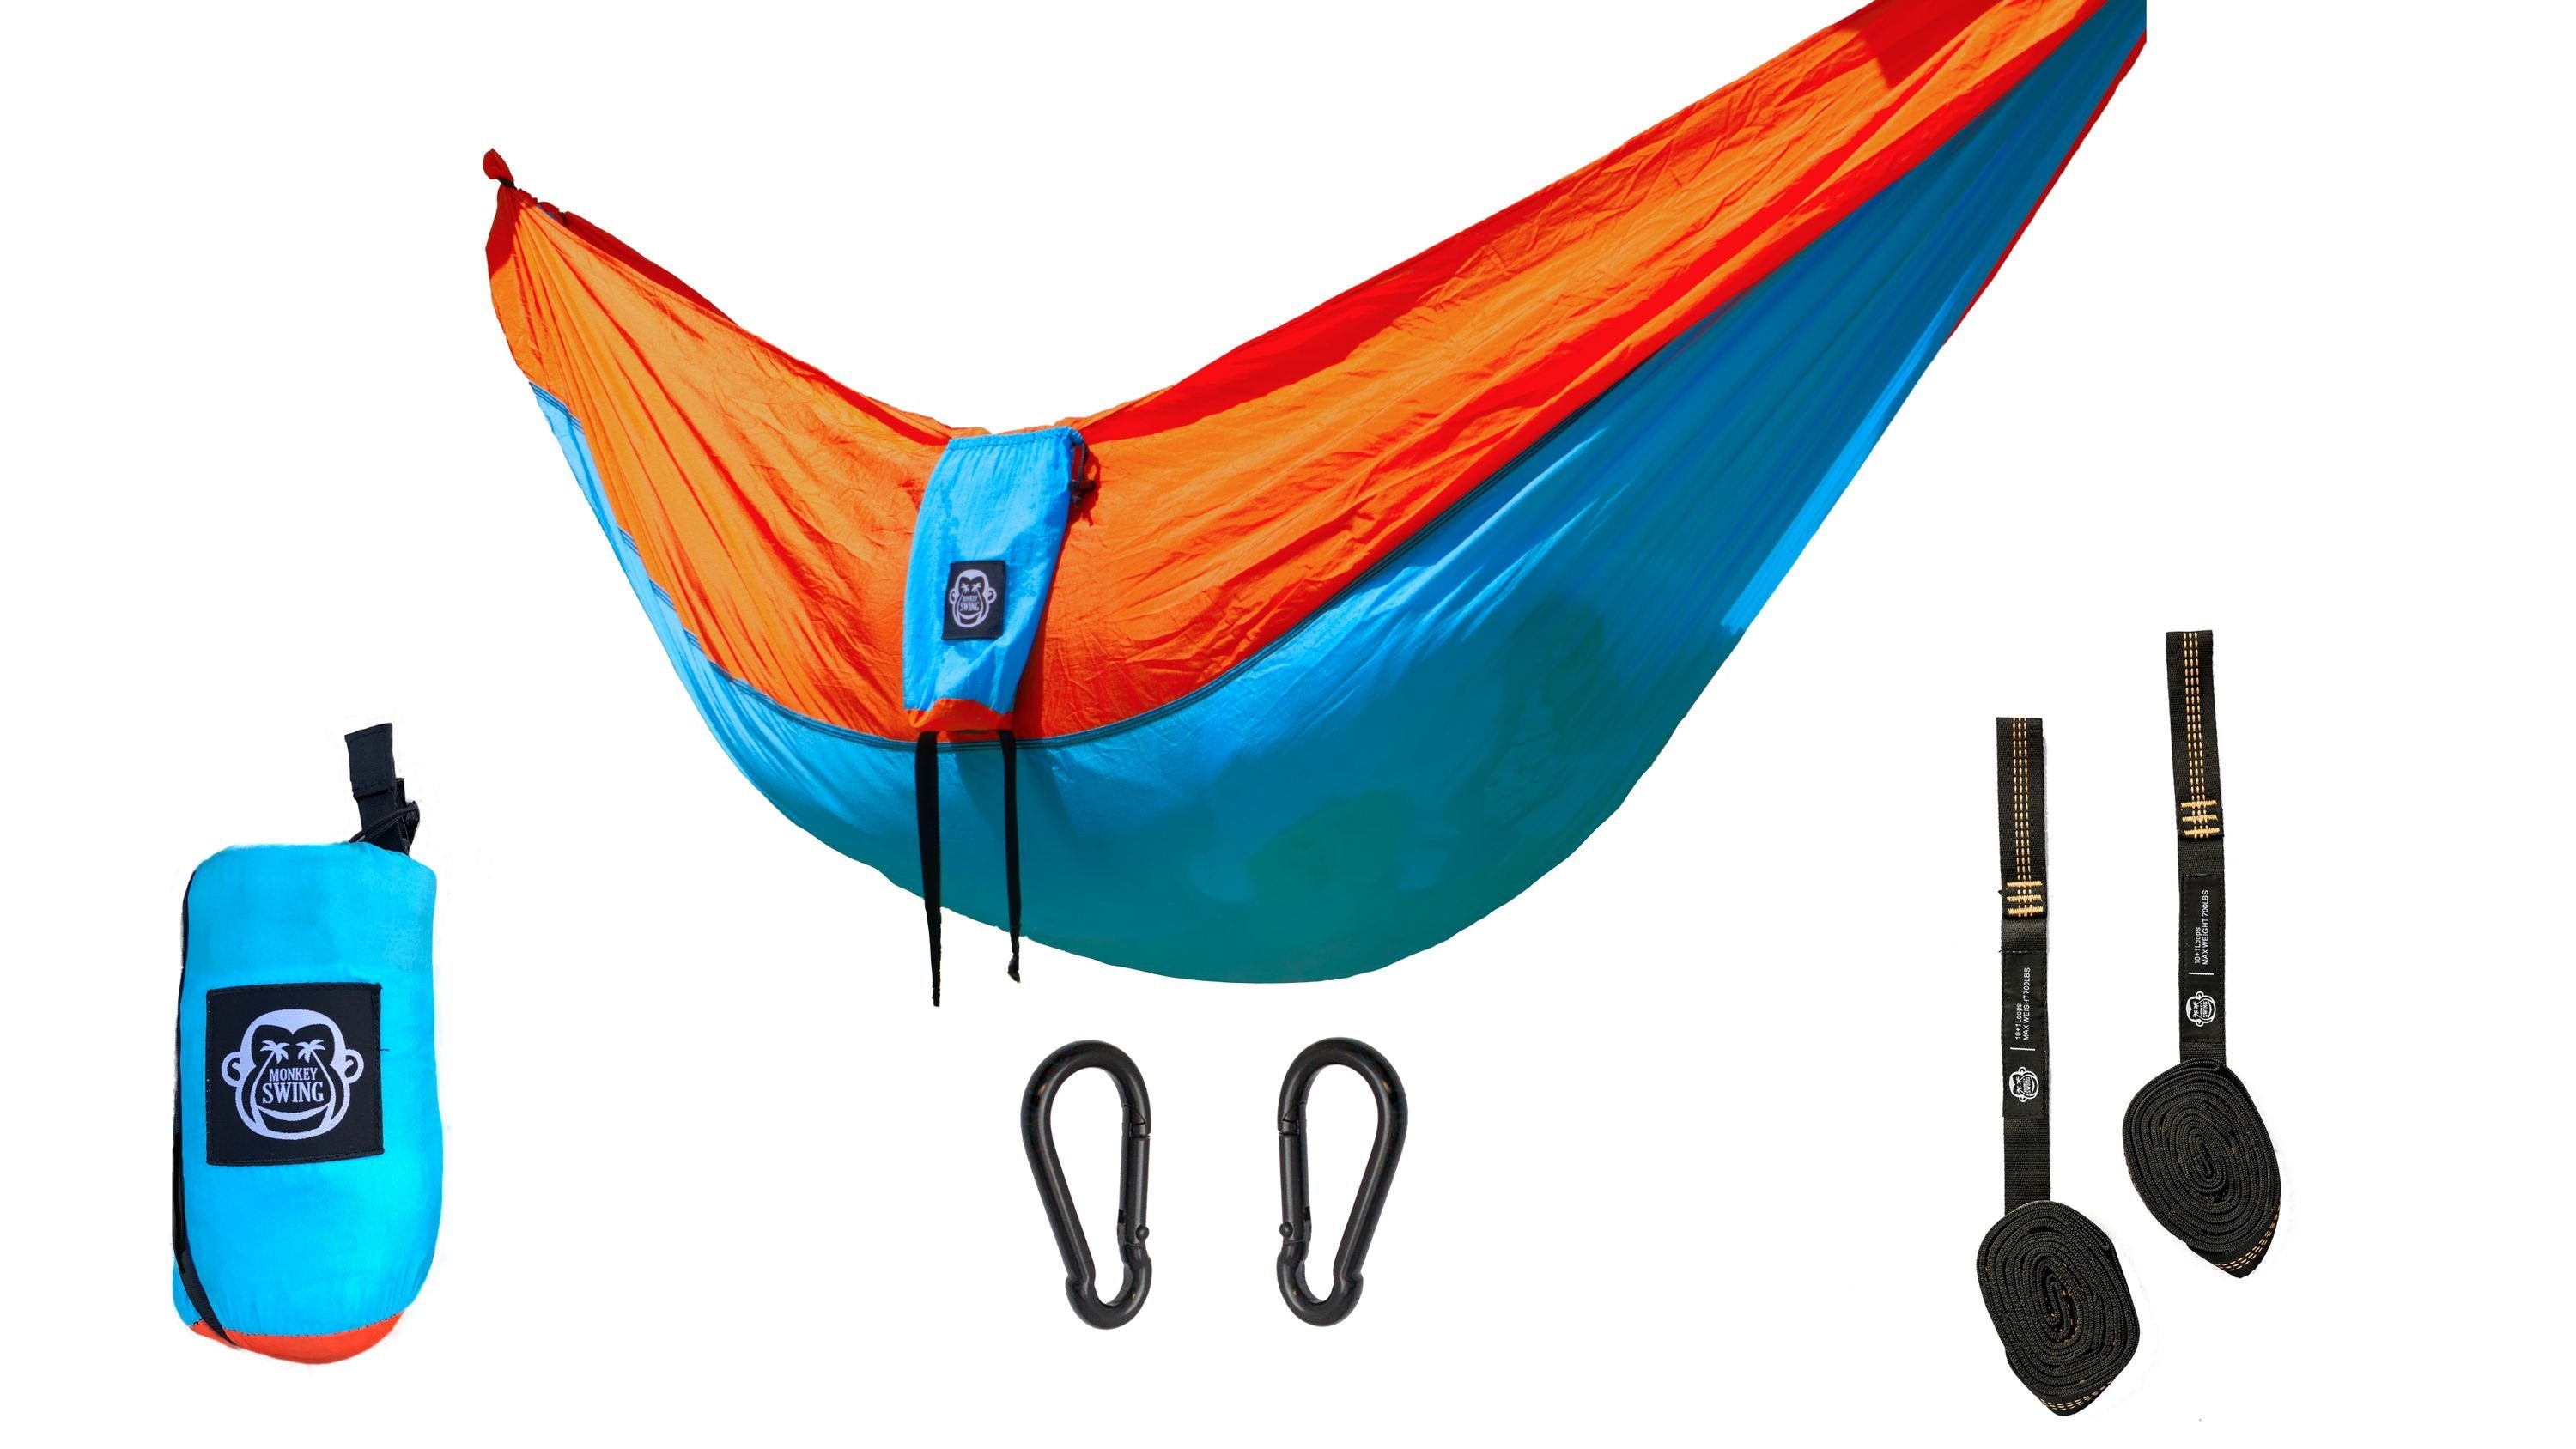 Monkey Swing Hängematte inkl. Aufhängeset, 270x140cm, Reisehängematte Outdoor ultraleicht Hellblau/Orange